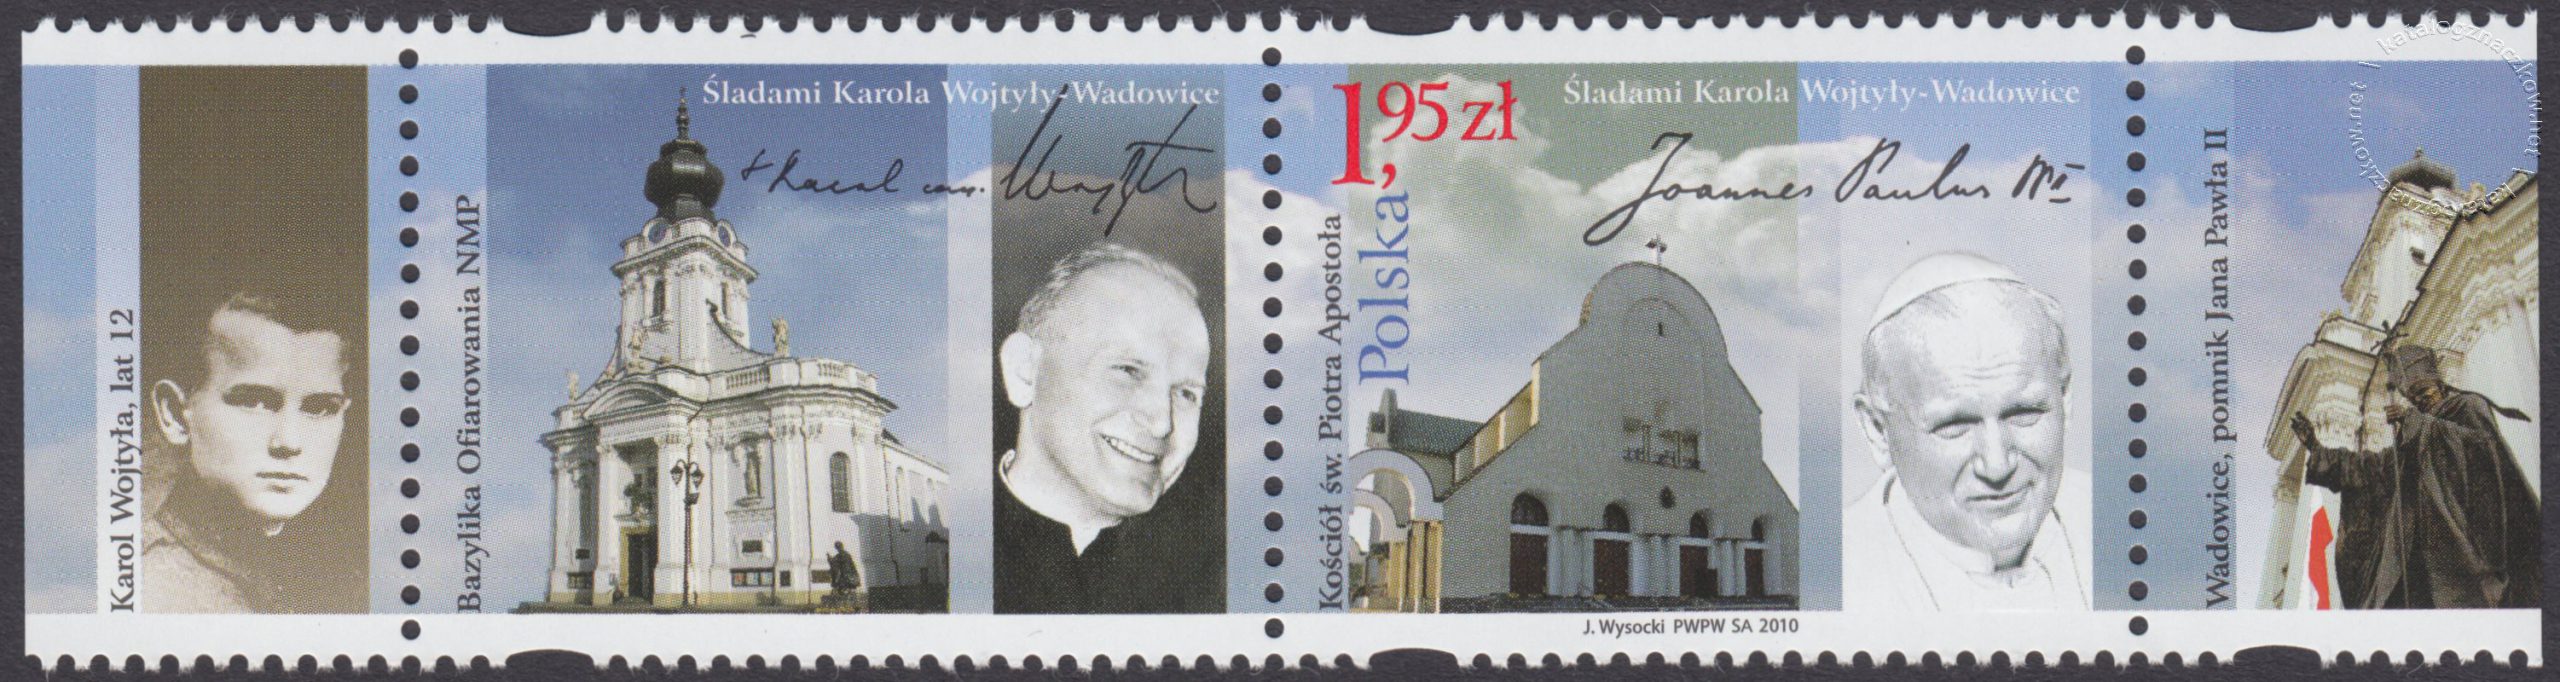 Śladami Karola Wojtyły – Wadowice znaczek nr 4334